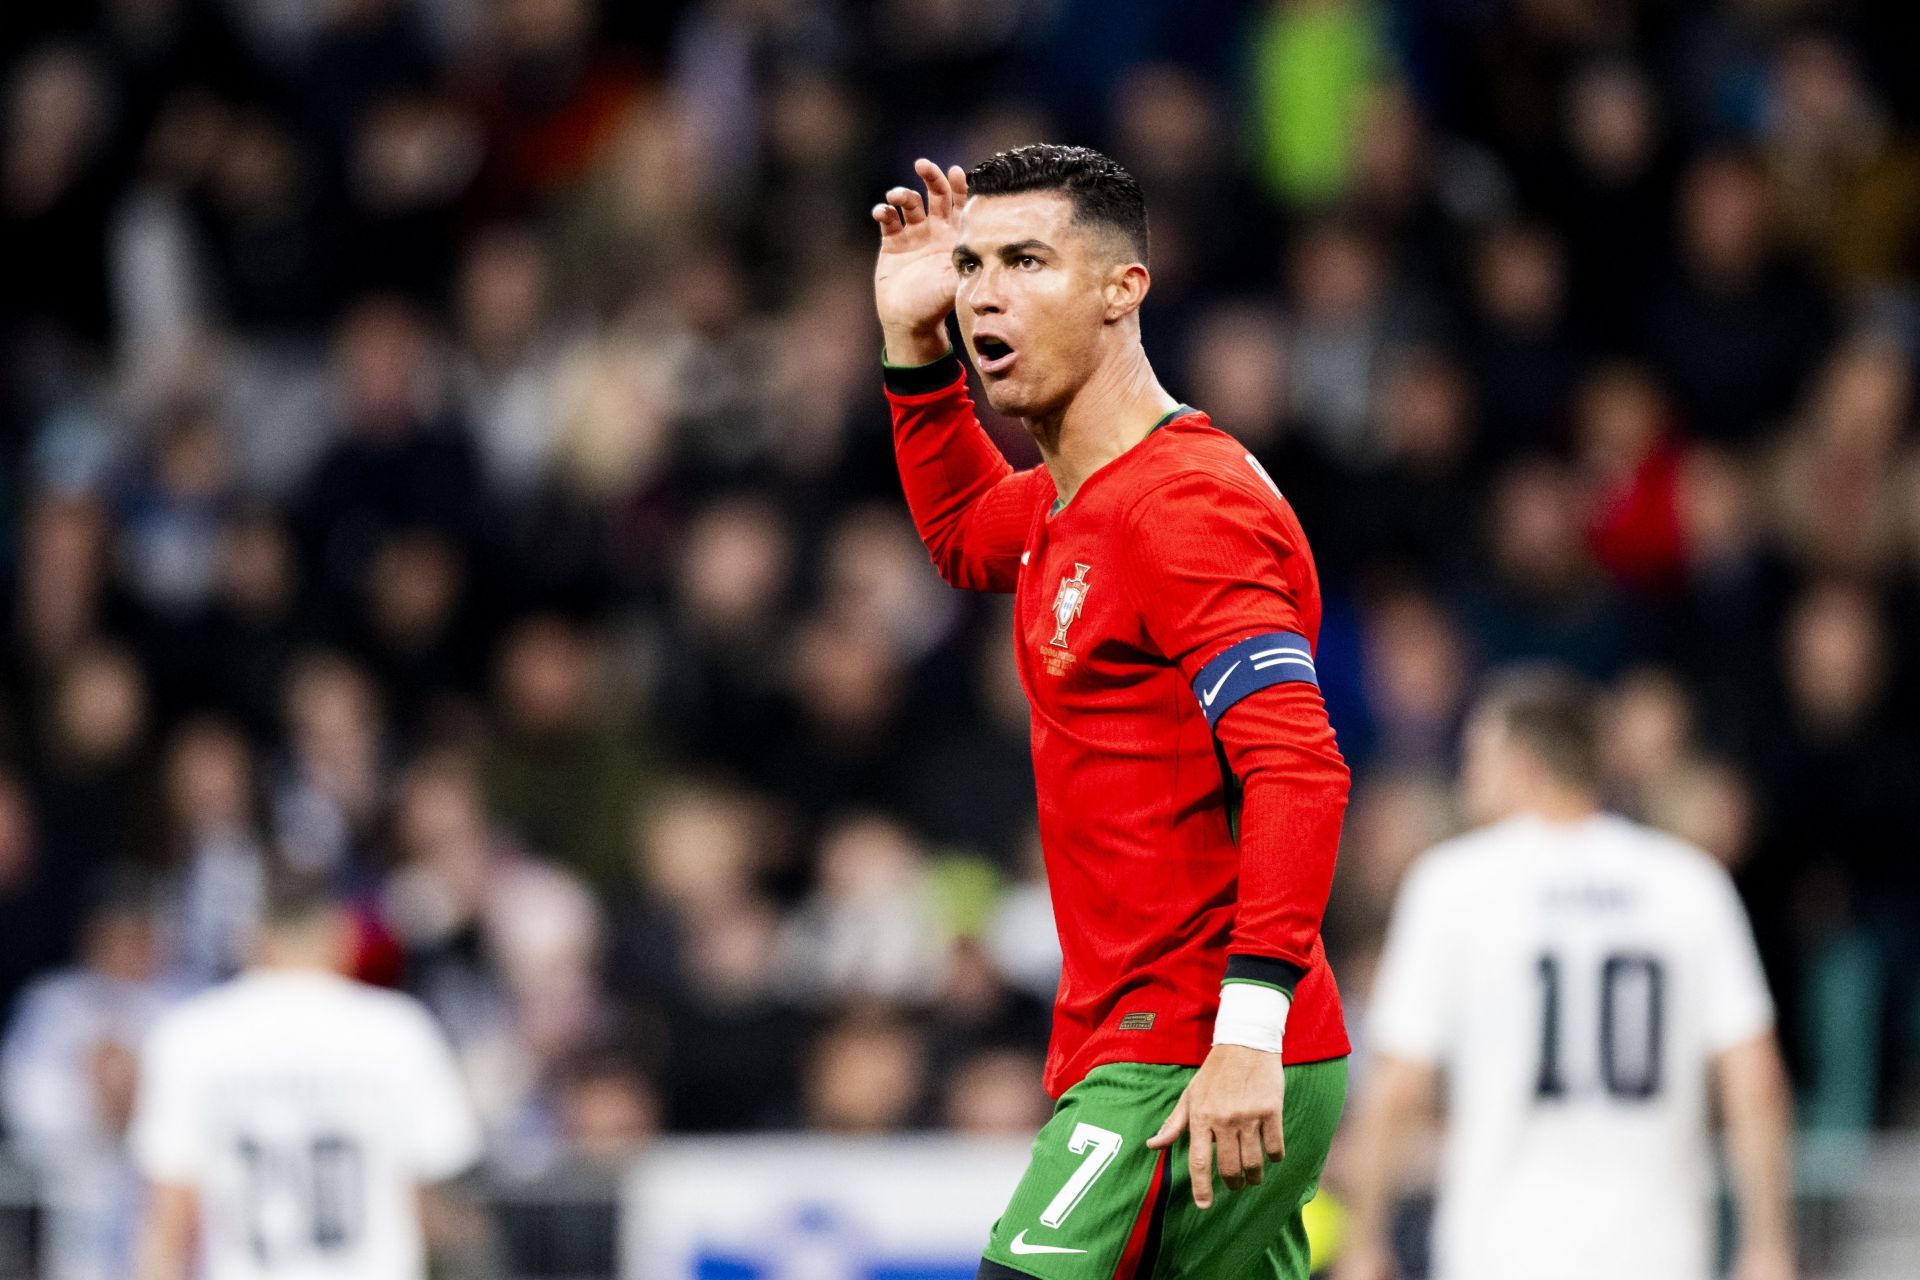 Ronaldo in Portugal colours